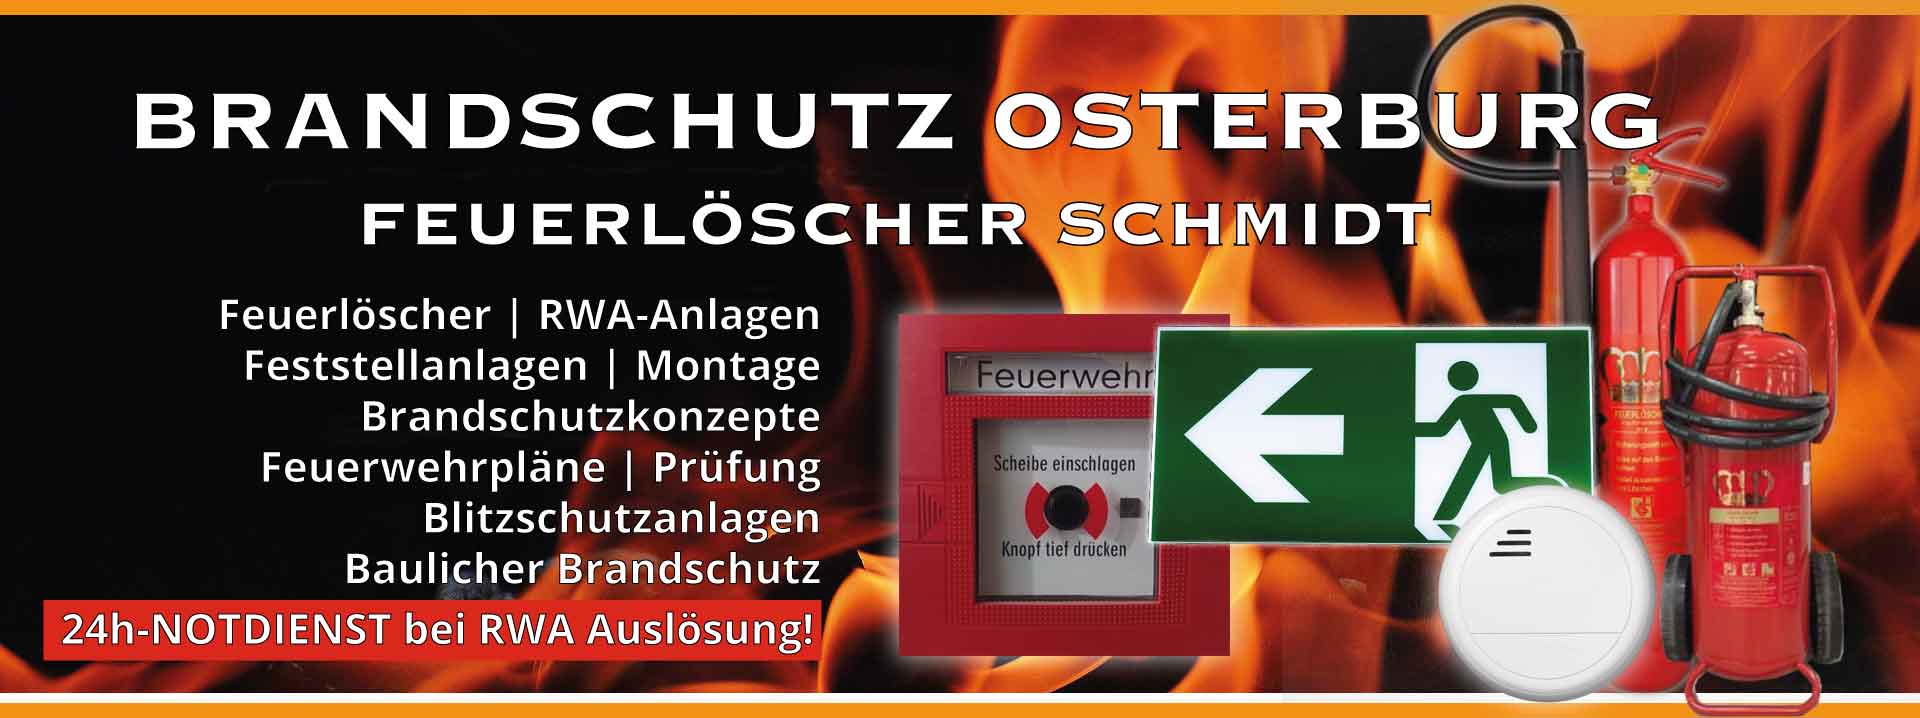 Brandschutz Osterburg